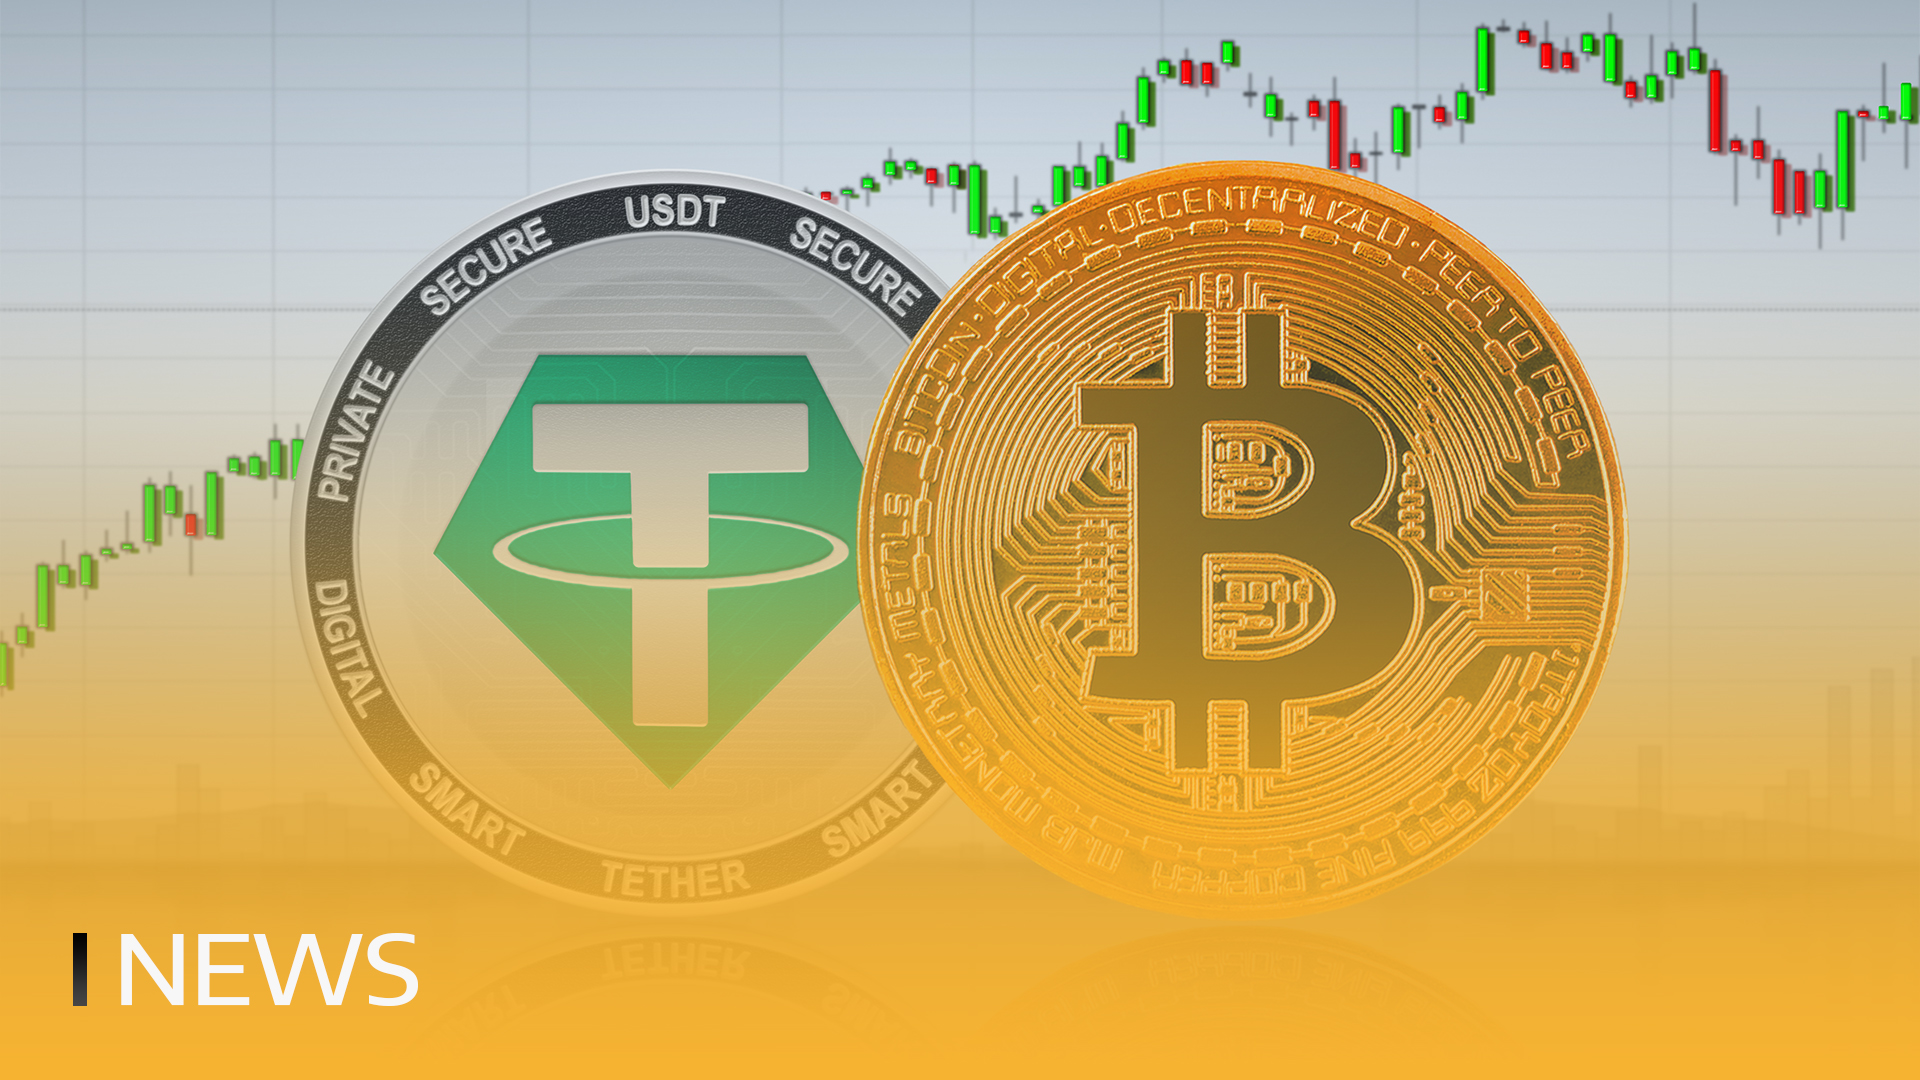 Η Tether αγοράζει περισσότερα από 600 εκατομμύρια δολάρια σε Bitcoin